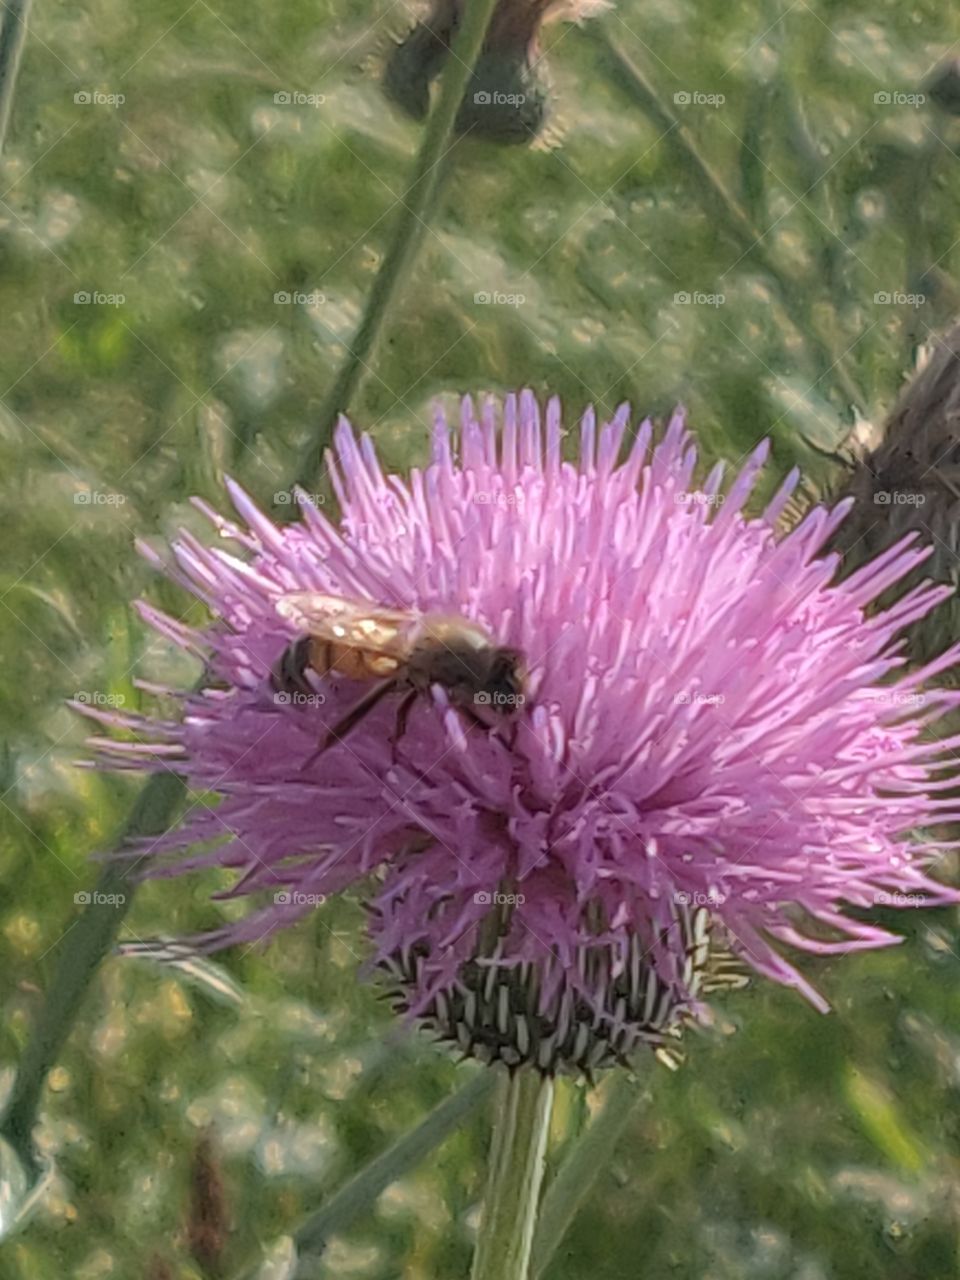 flower bee pollenating